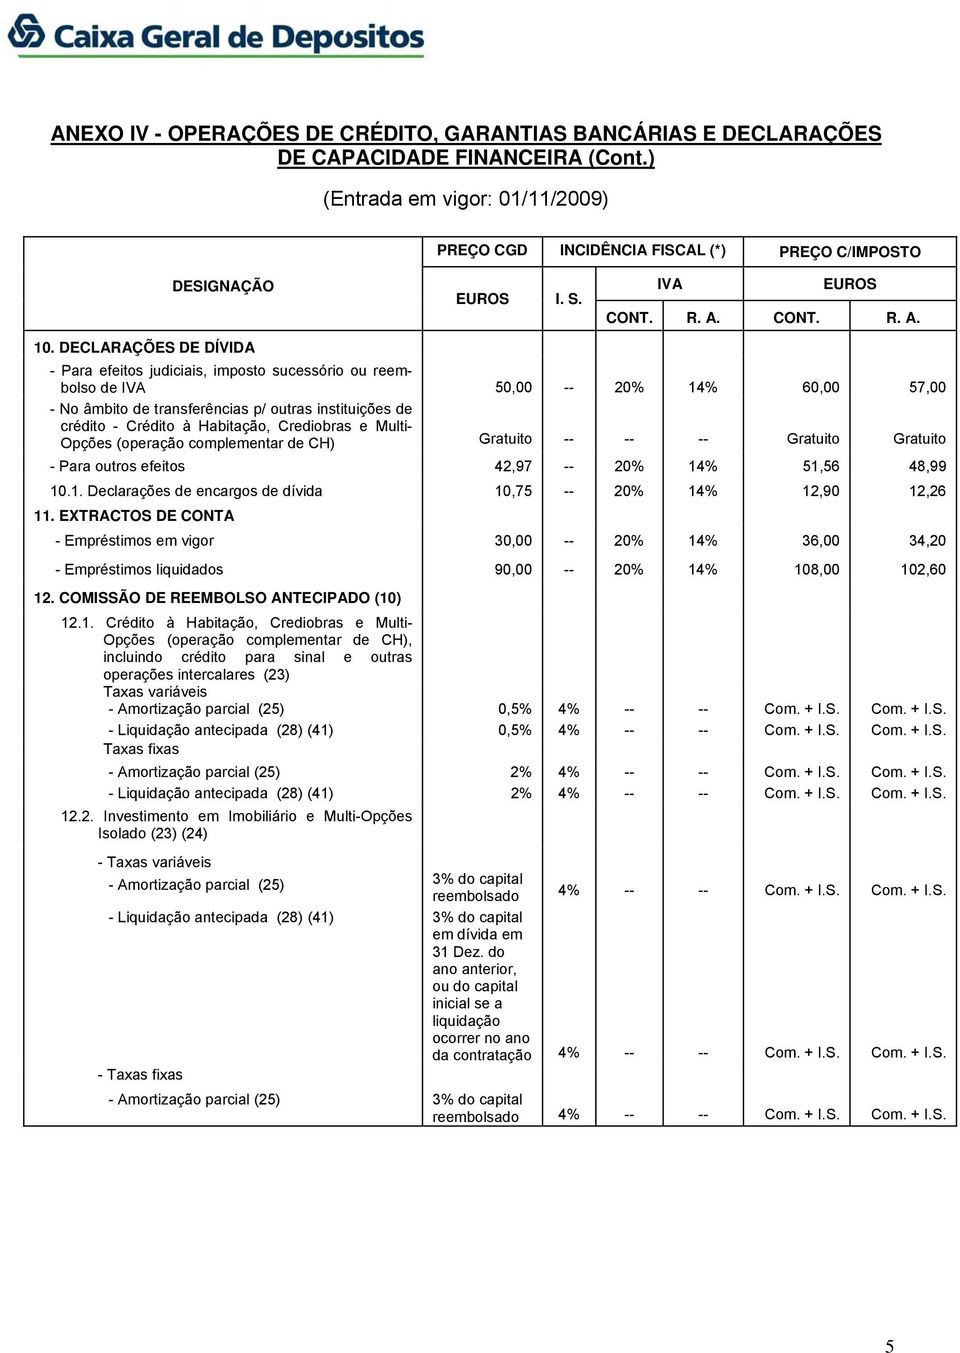 EXTRACTOS DE CONTA - Empréstimos em vigor 30,00 20% 14